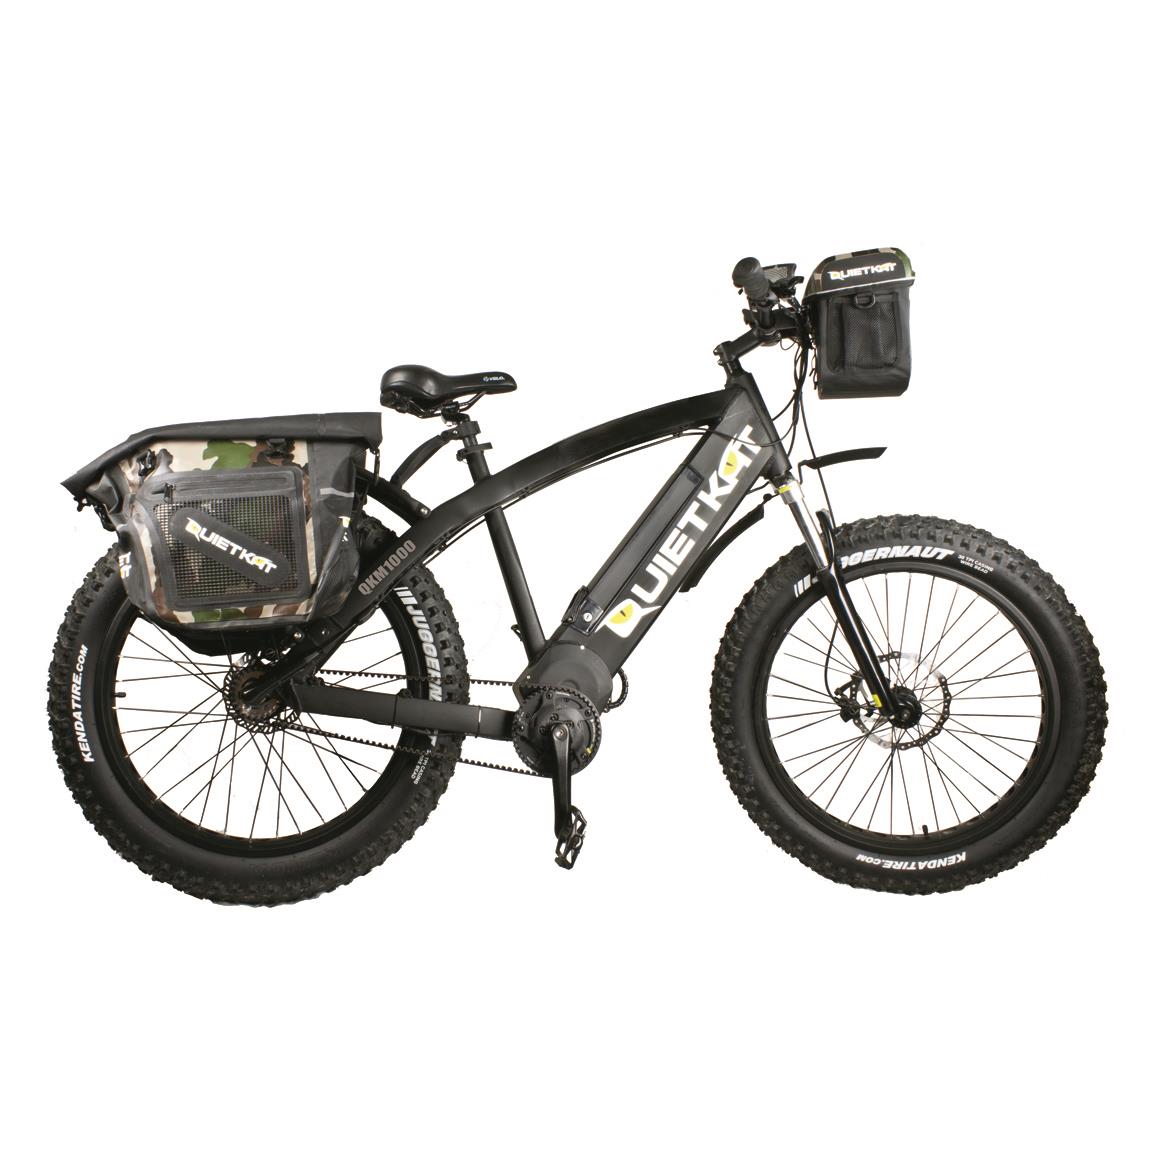 QuietKat Pannier Dry Saddle Bags for FatKat Bikes 701952, Electric